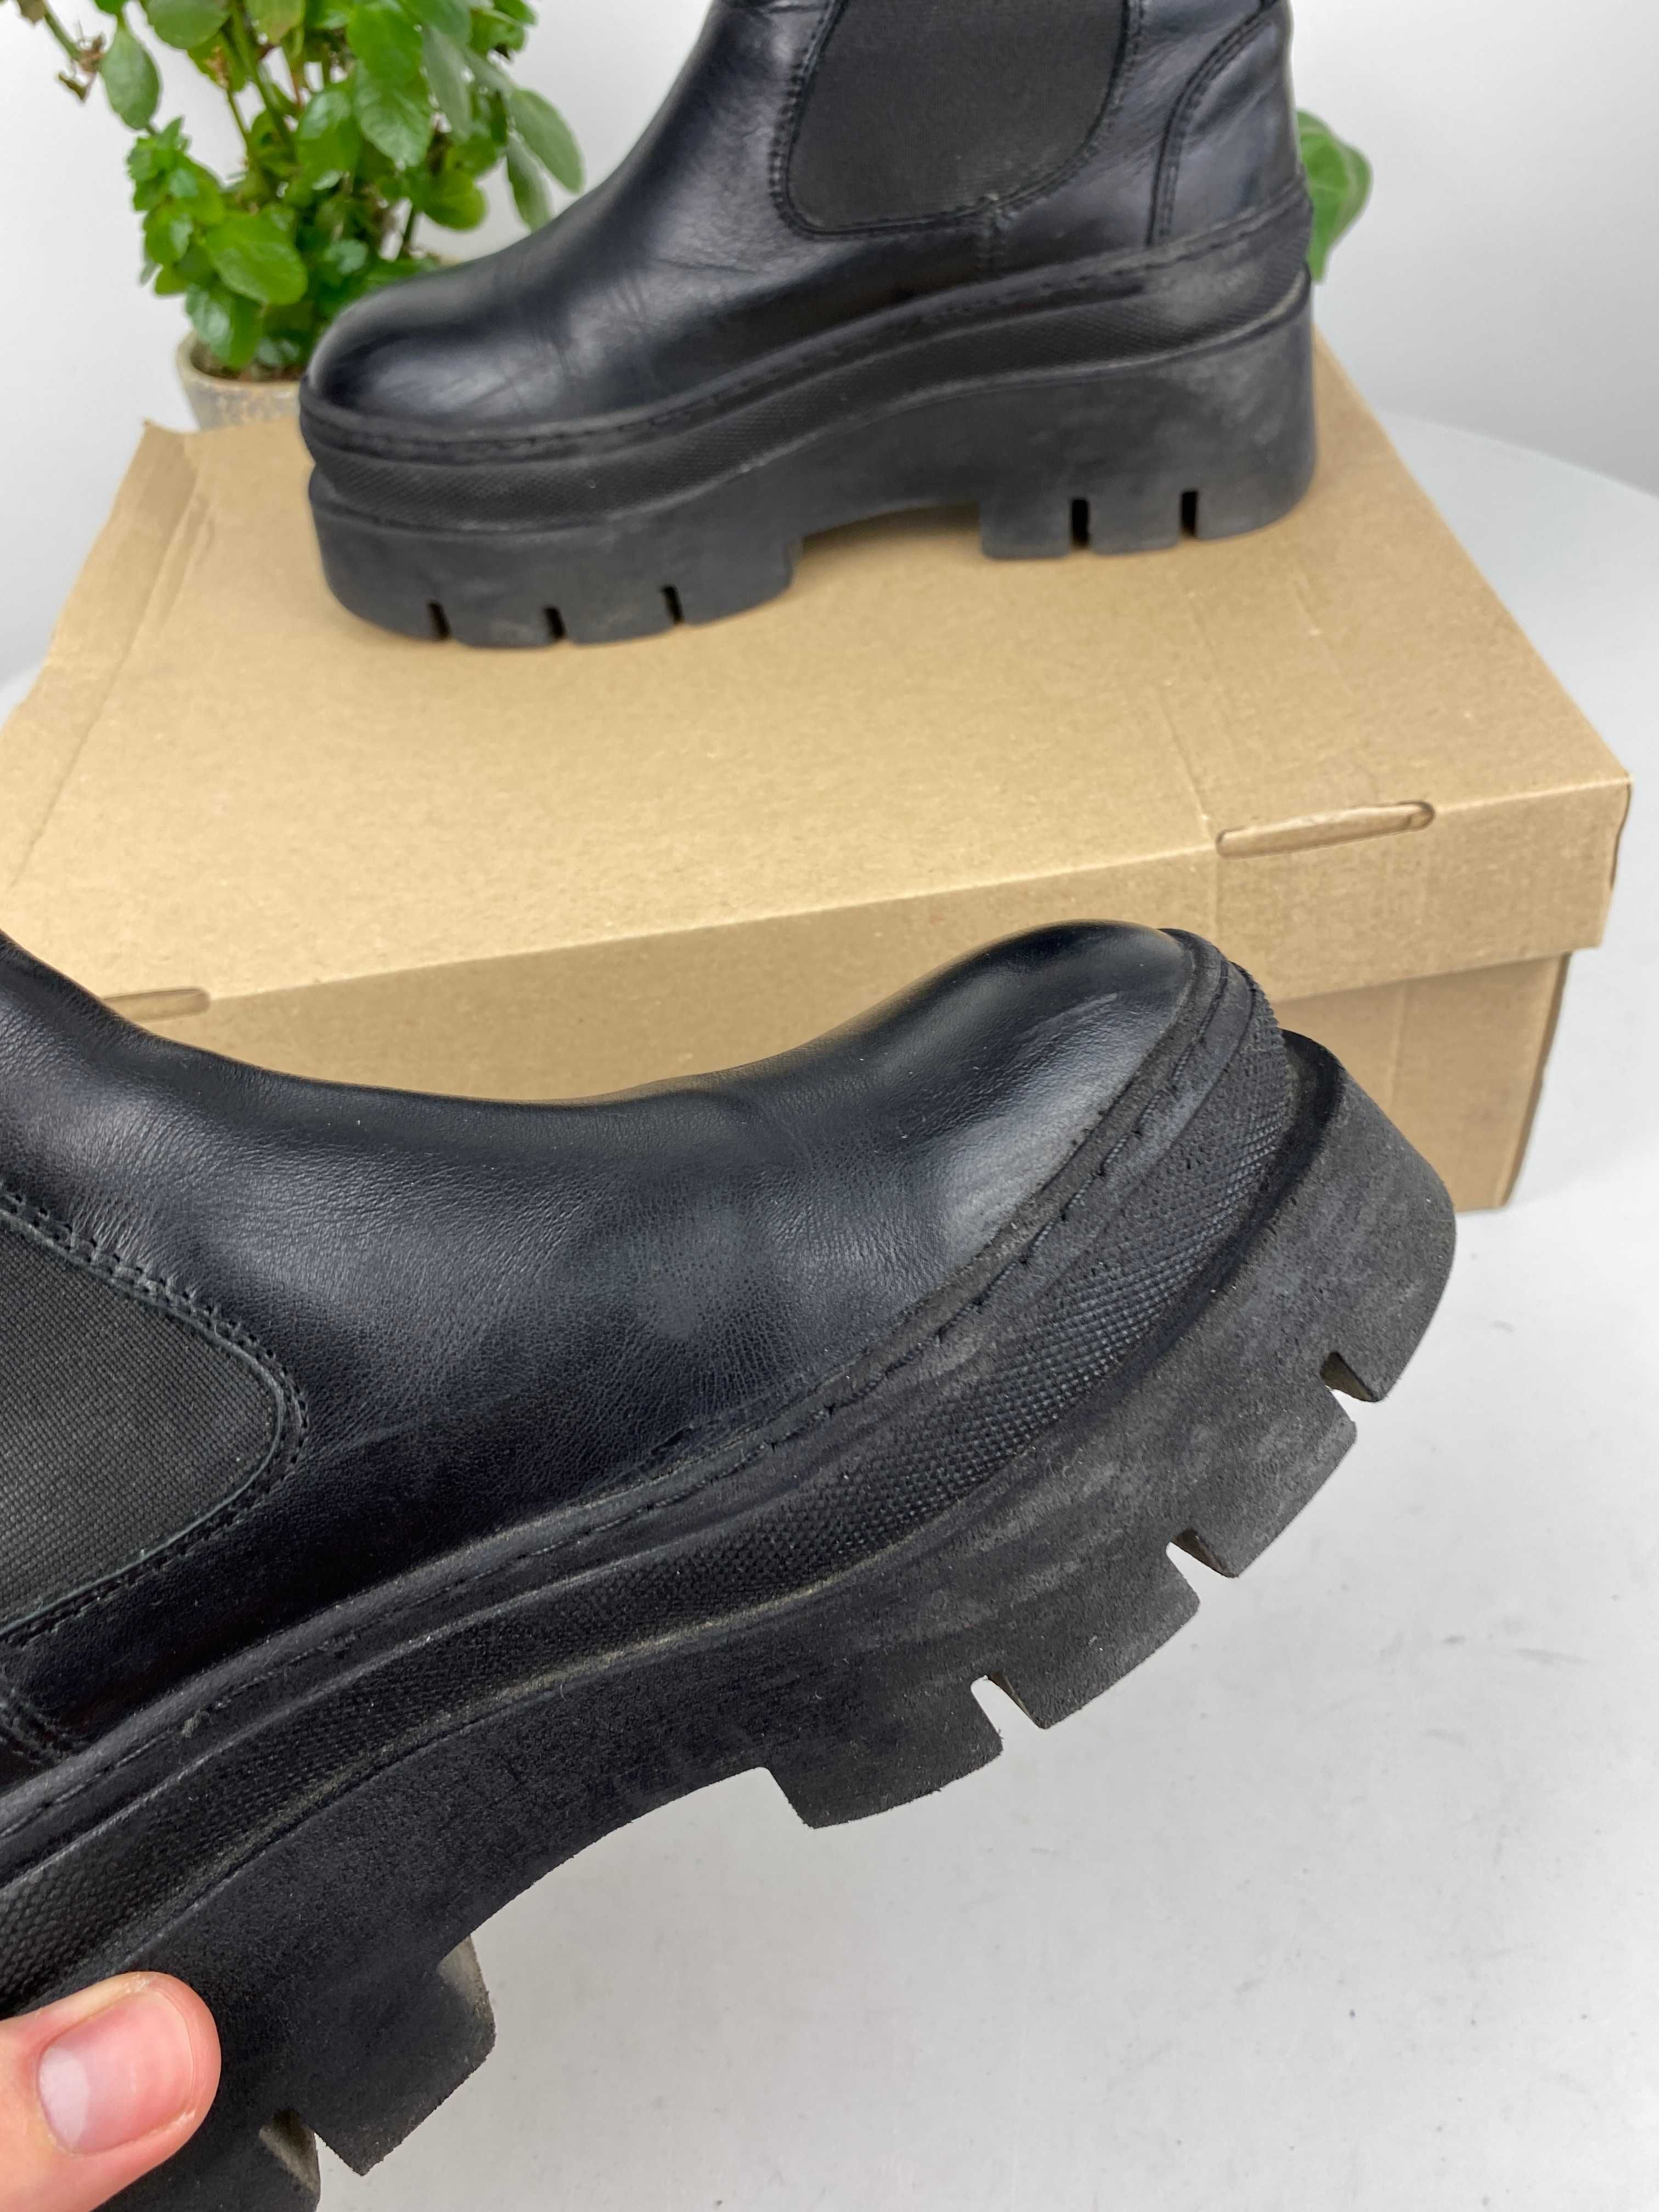 czarne buty botki pavement r. 36 n 15z